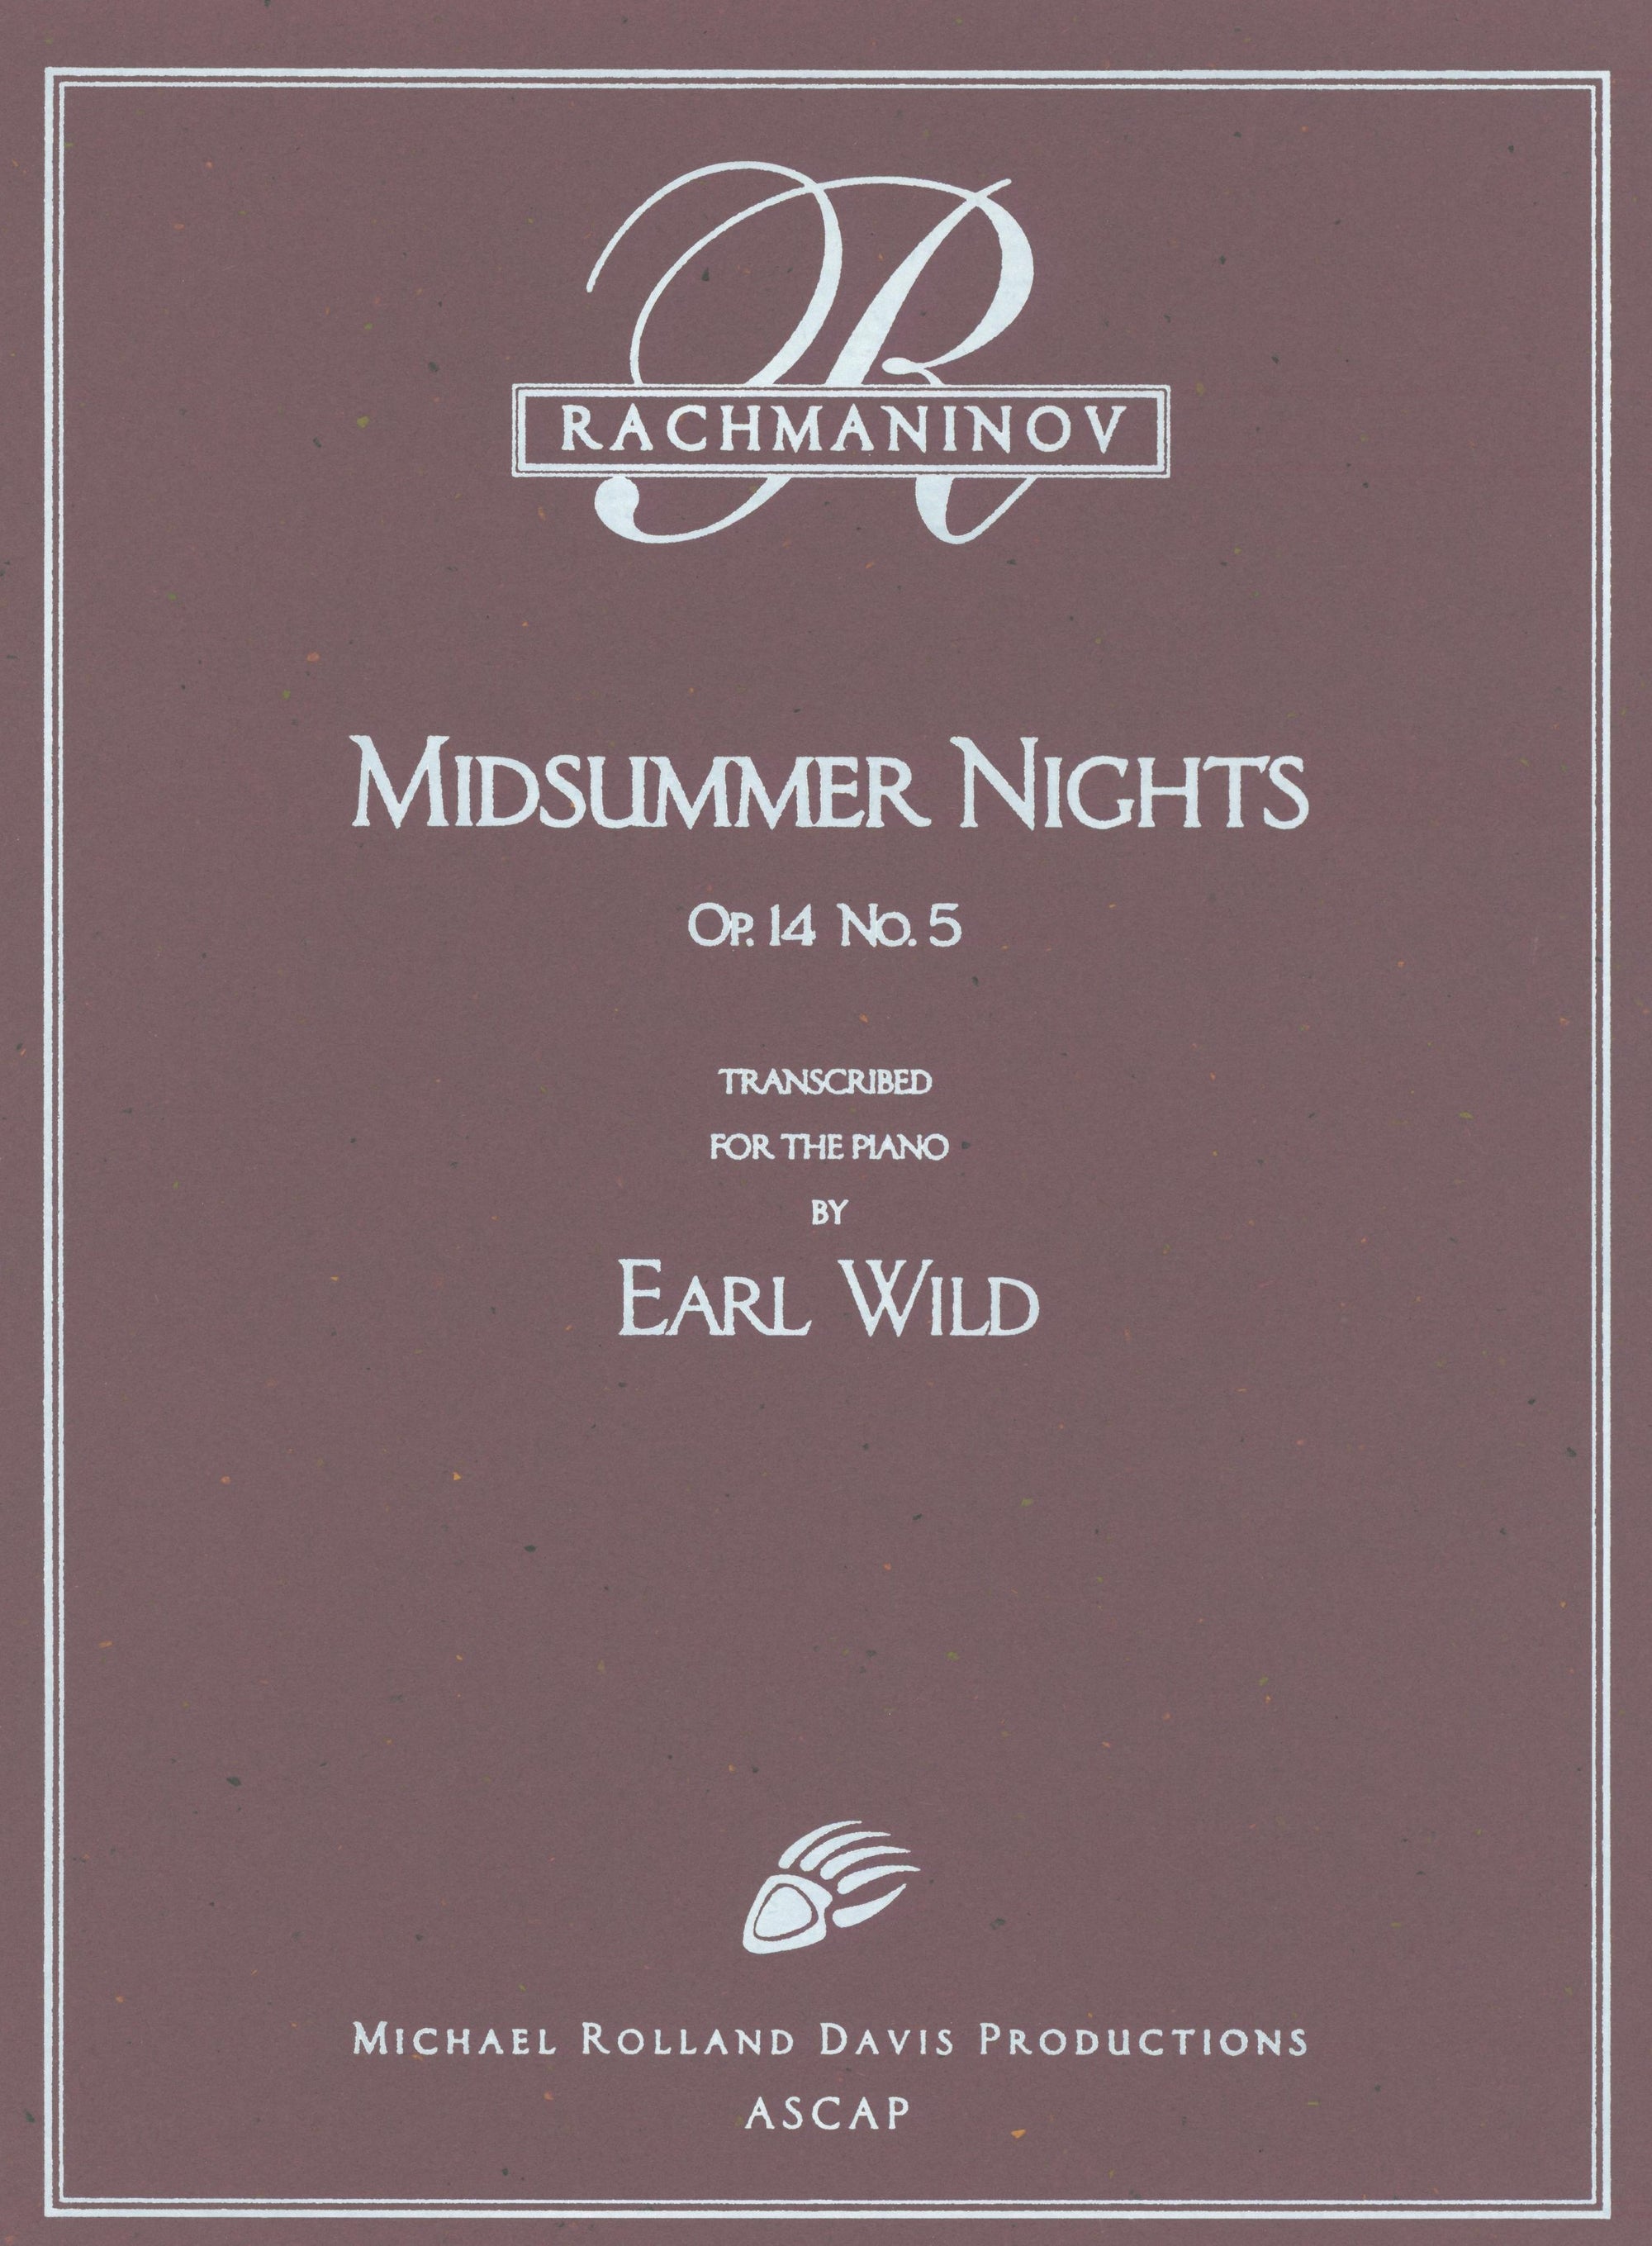 Rachmaninoff-Wild: Midsummer Nights, Op. 14, No. 5